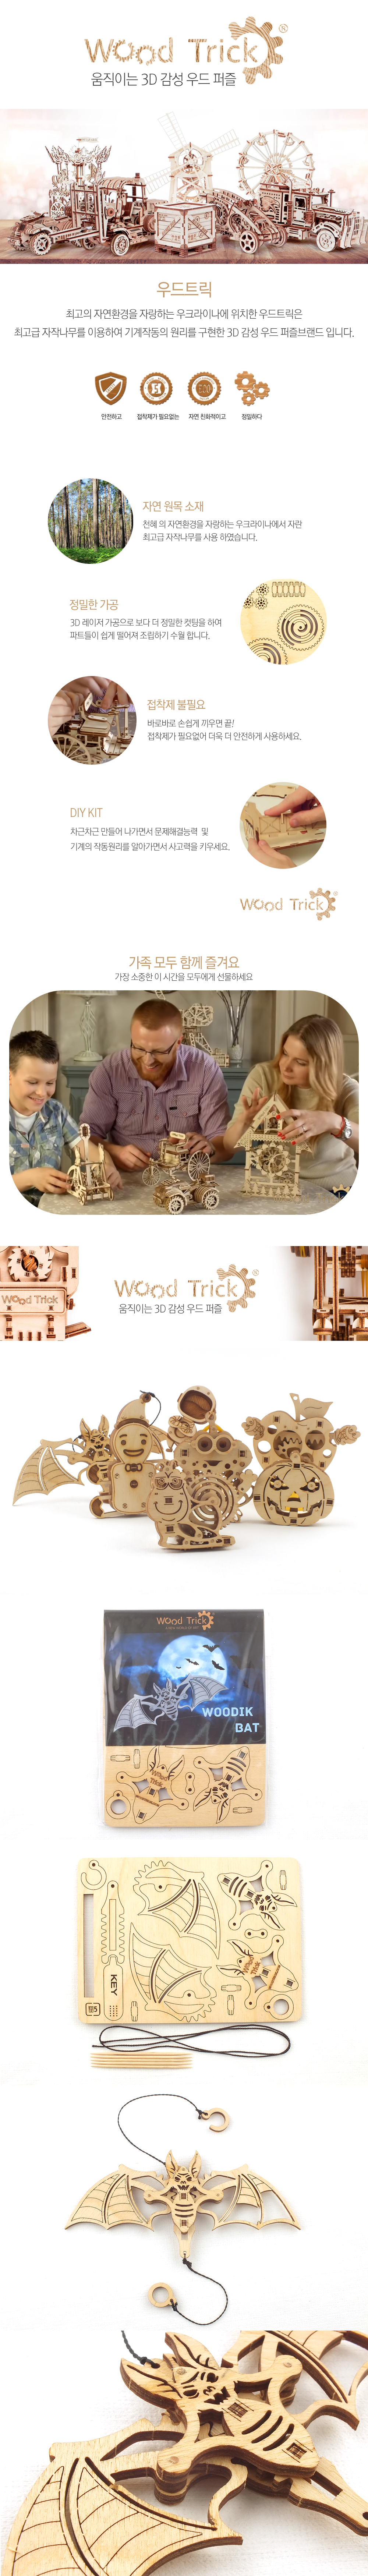 WOODTRICK 박쥐 우드토이 3D 목재 퍼즐 6,000원 - 레프리카 키덜트/취미, 블록/퍼즐, 조각/퍼즐, 우드퍼즐 바보사랑 WOODTRICK 박쥐 우드토이 3D 목재 퍼즐 6,000원 - 레프리카 키덜트/취미, 블록/퍼즐, 조각/퍼즐, 우드퍼즐 바보사랑